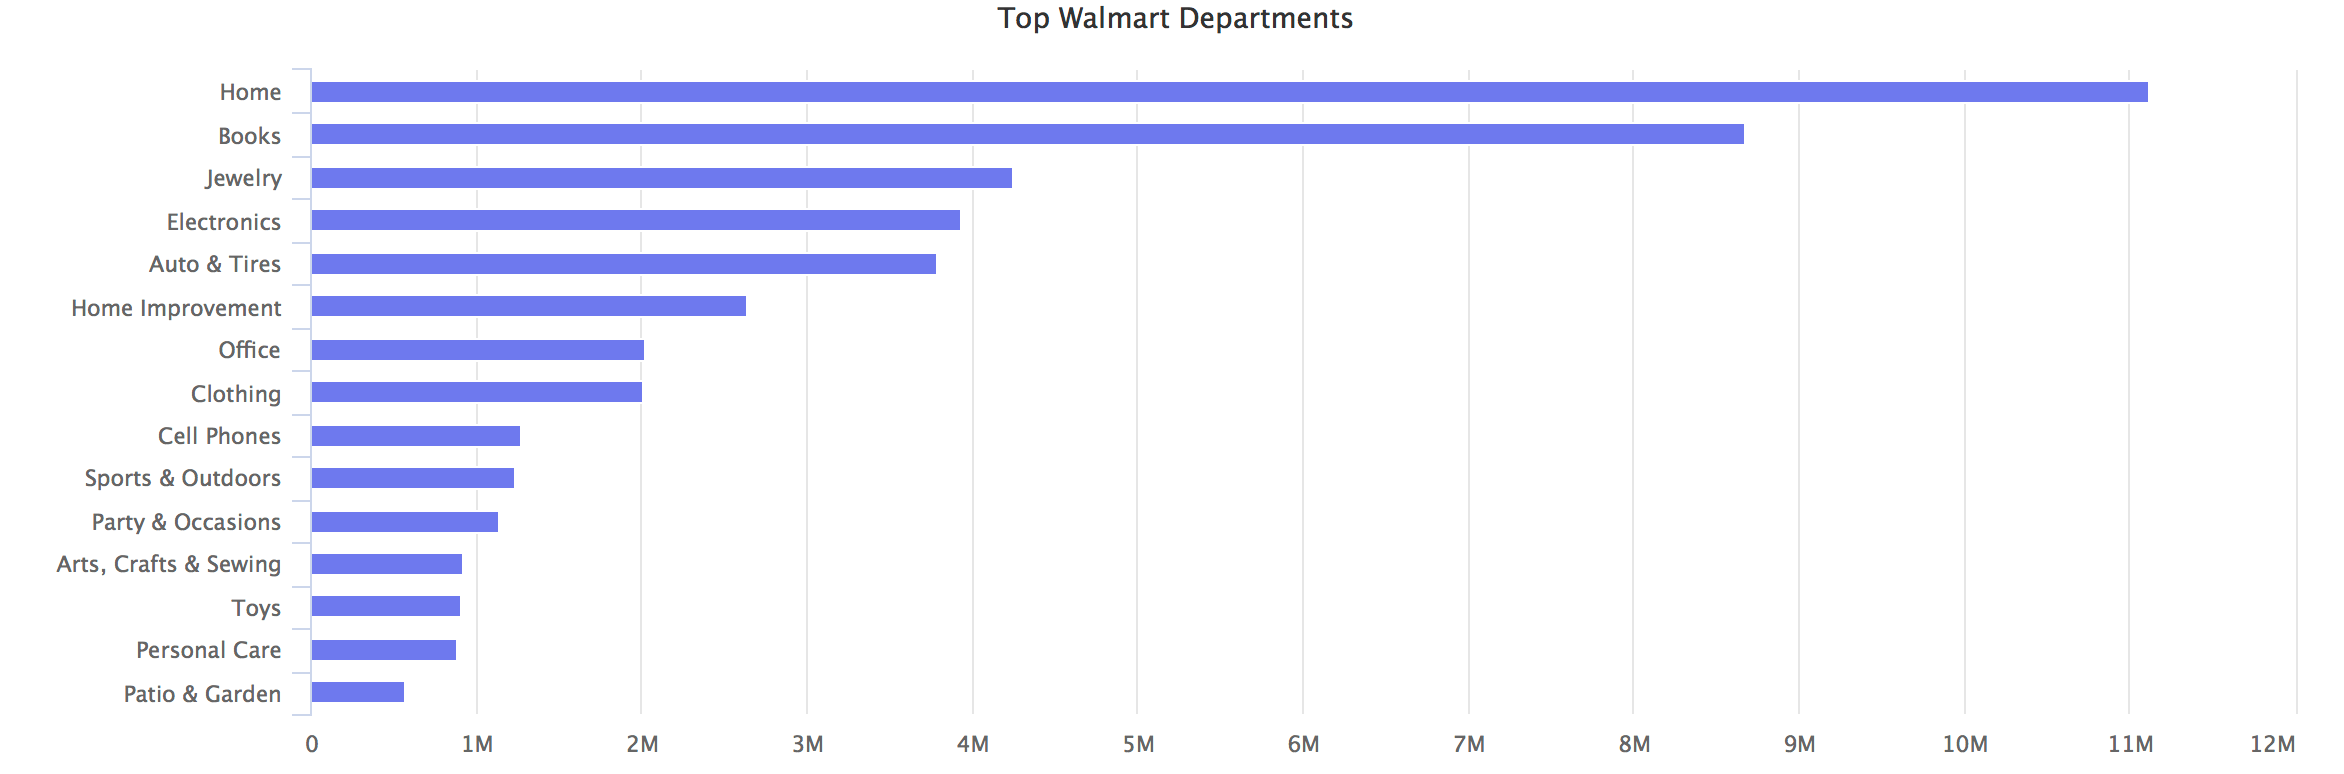 Walmart Top Departments